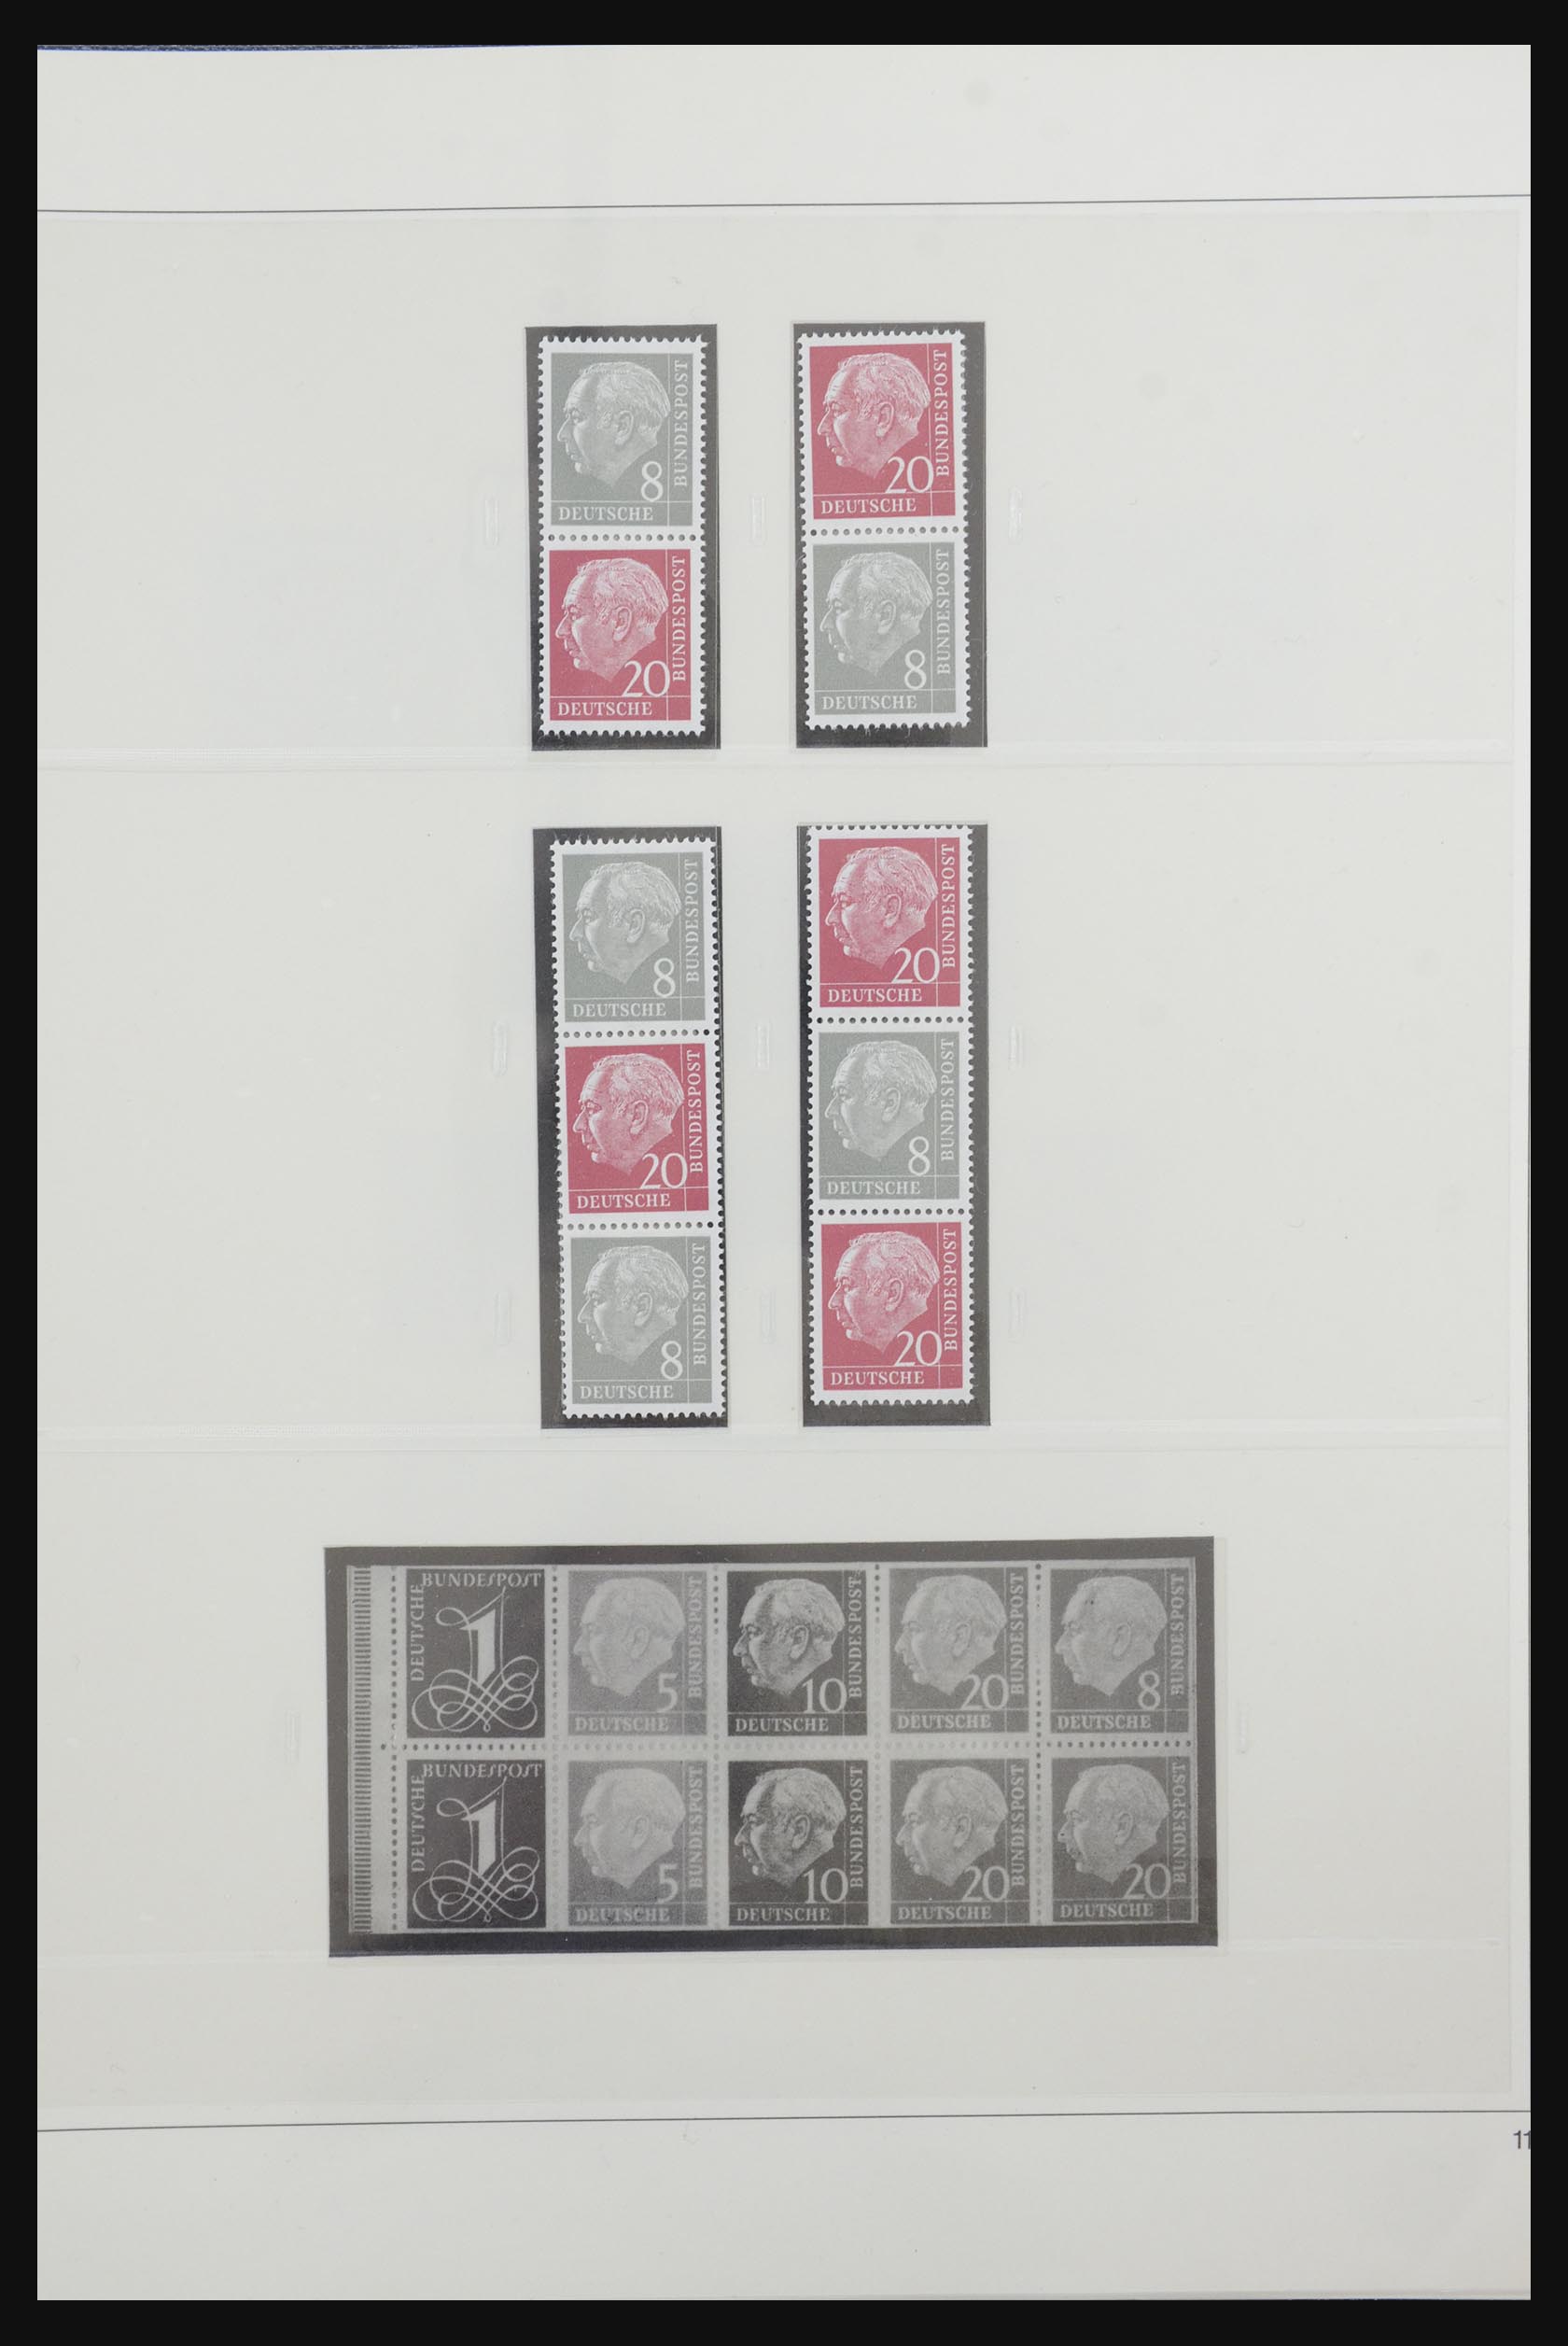 31842 014 - 31842 Bundespost combinaties 1951-2003.